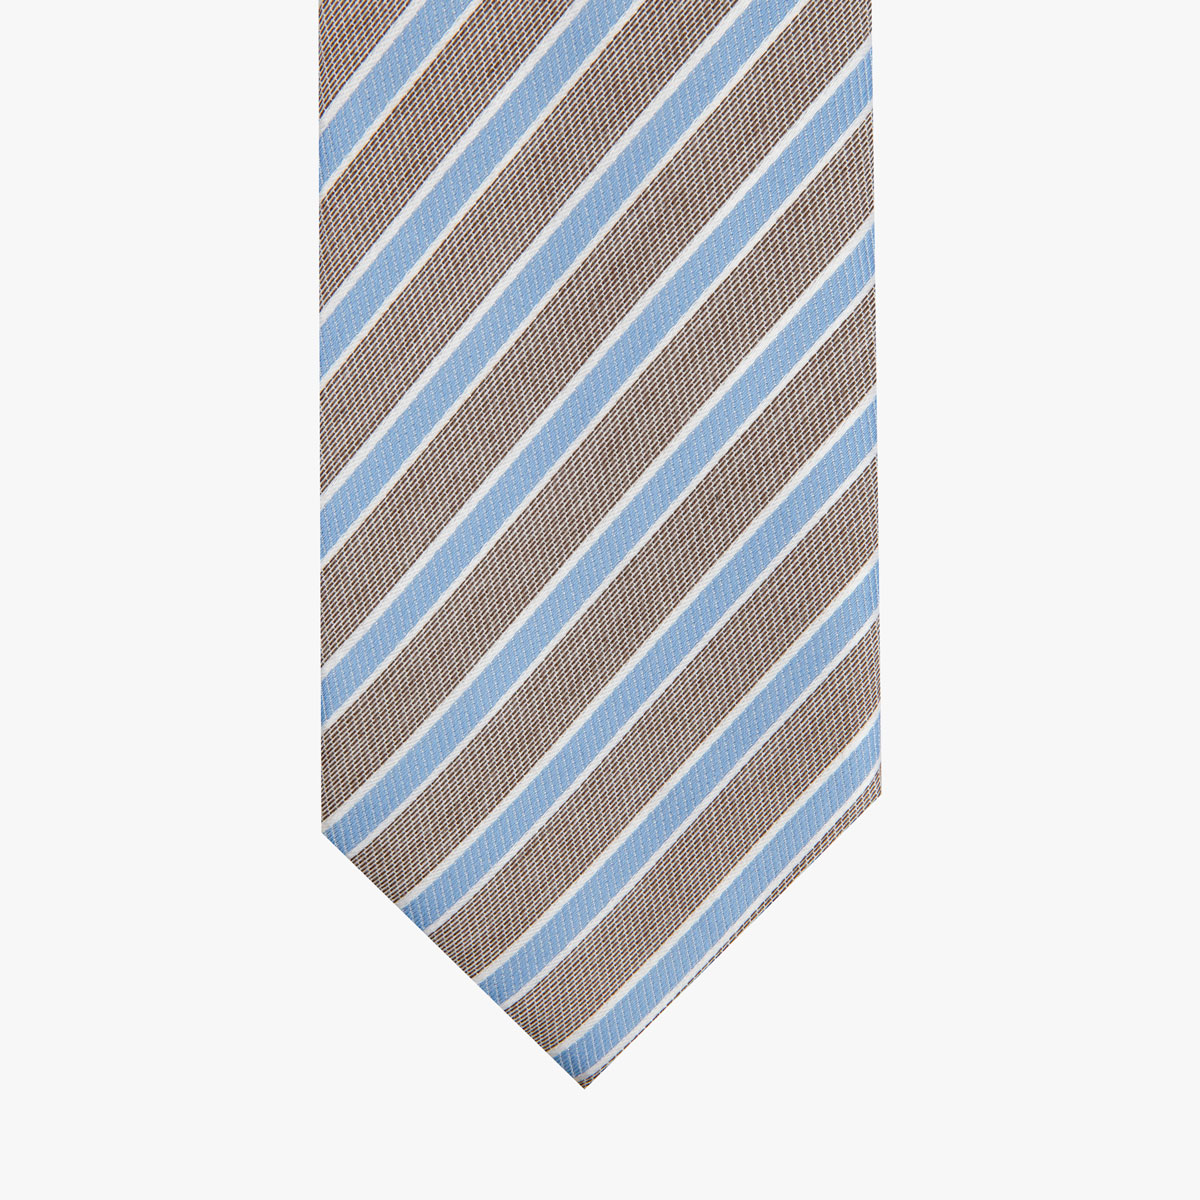 Krawatte glatt gestreift in braun und blau